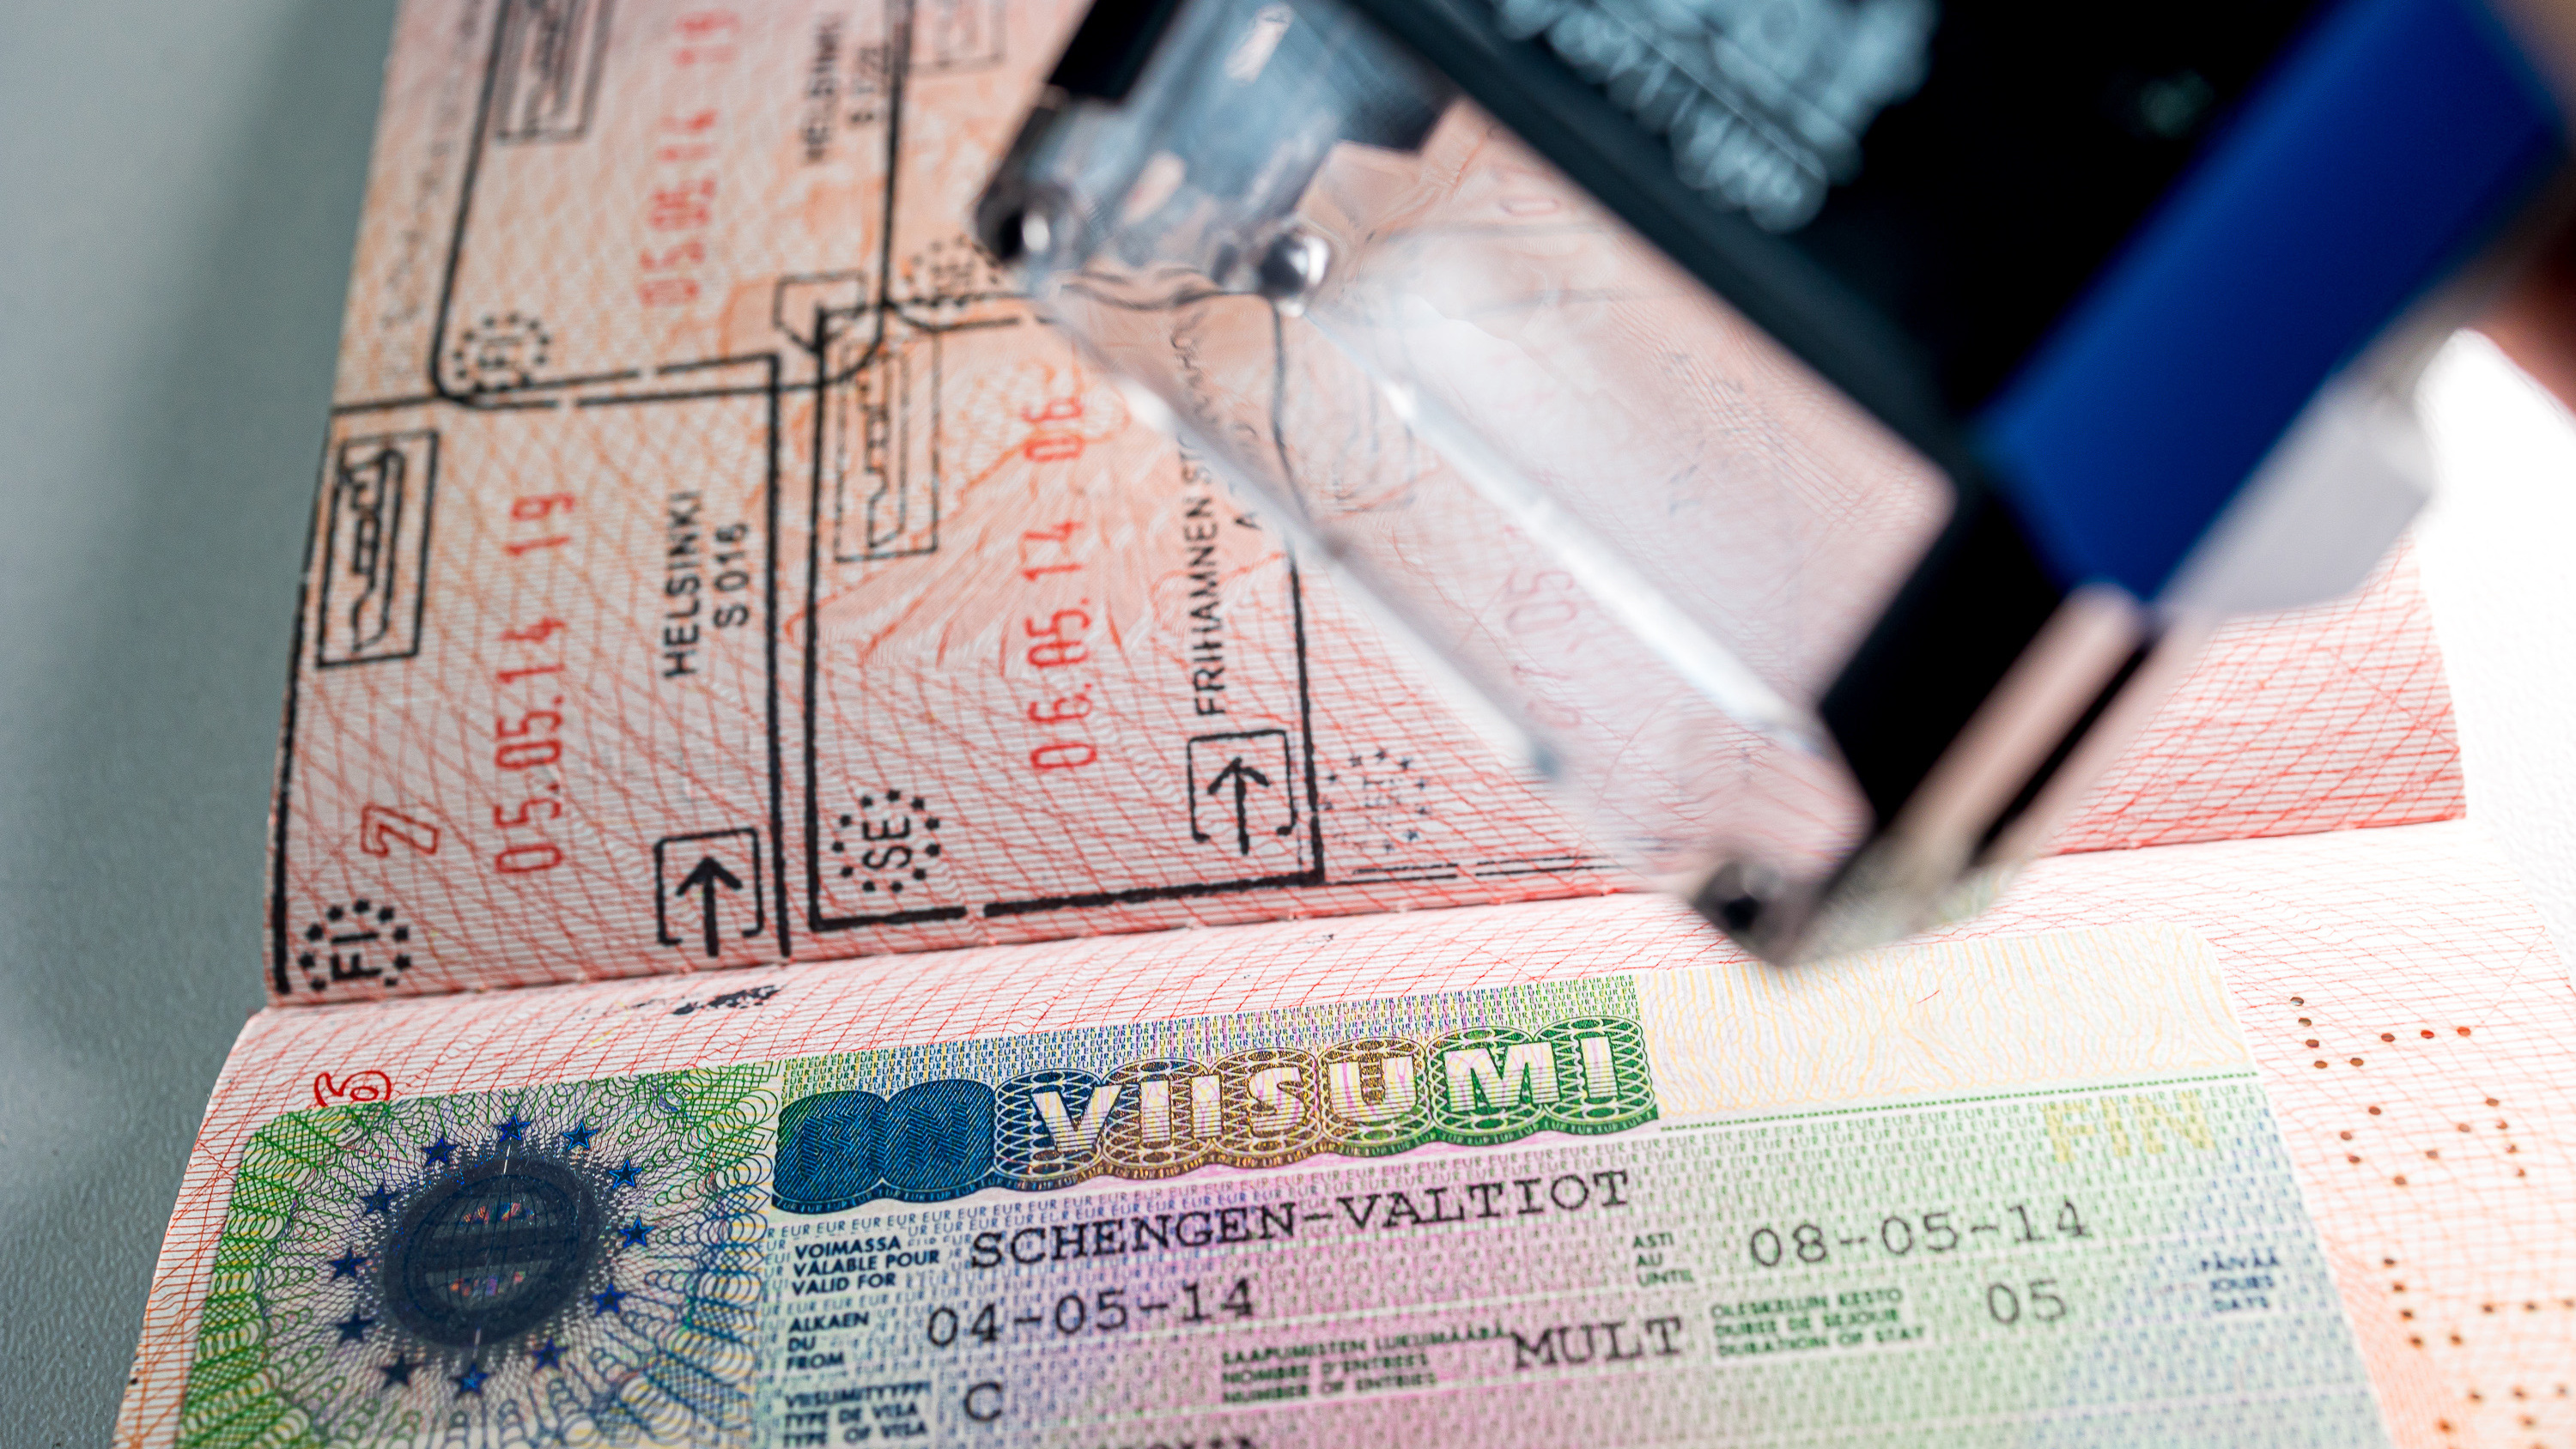 Как получить длинную шенгенскую визу в новых условиях. Неужели реально? Личный опыт